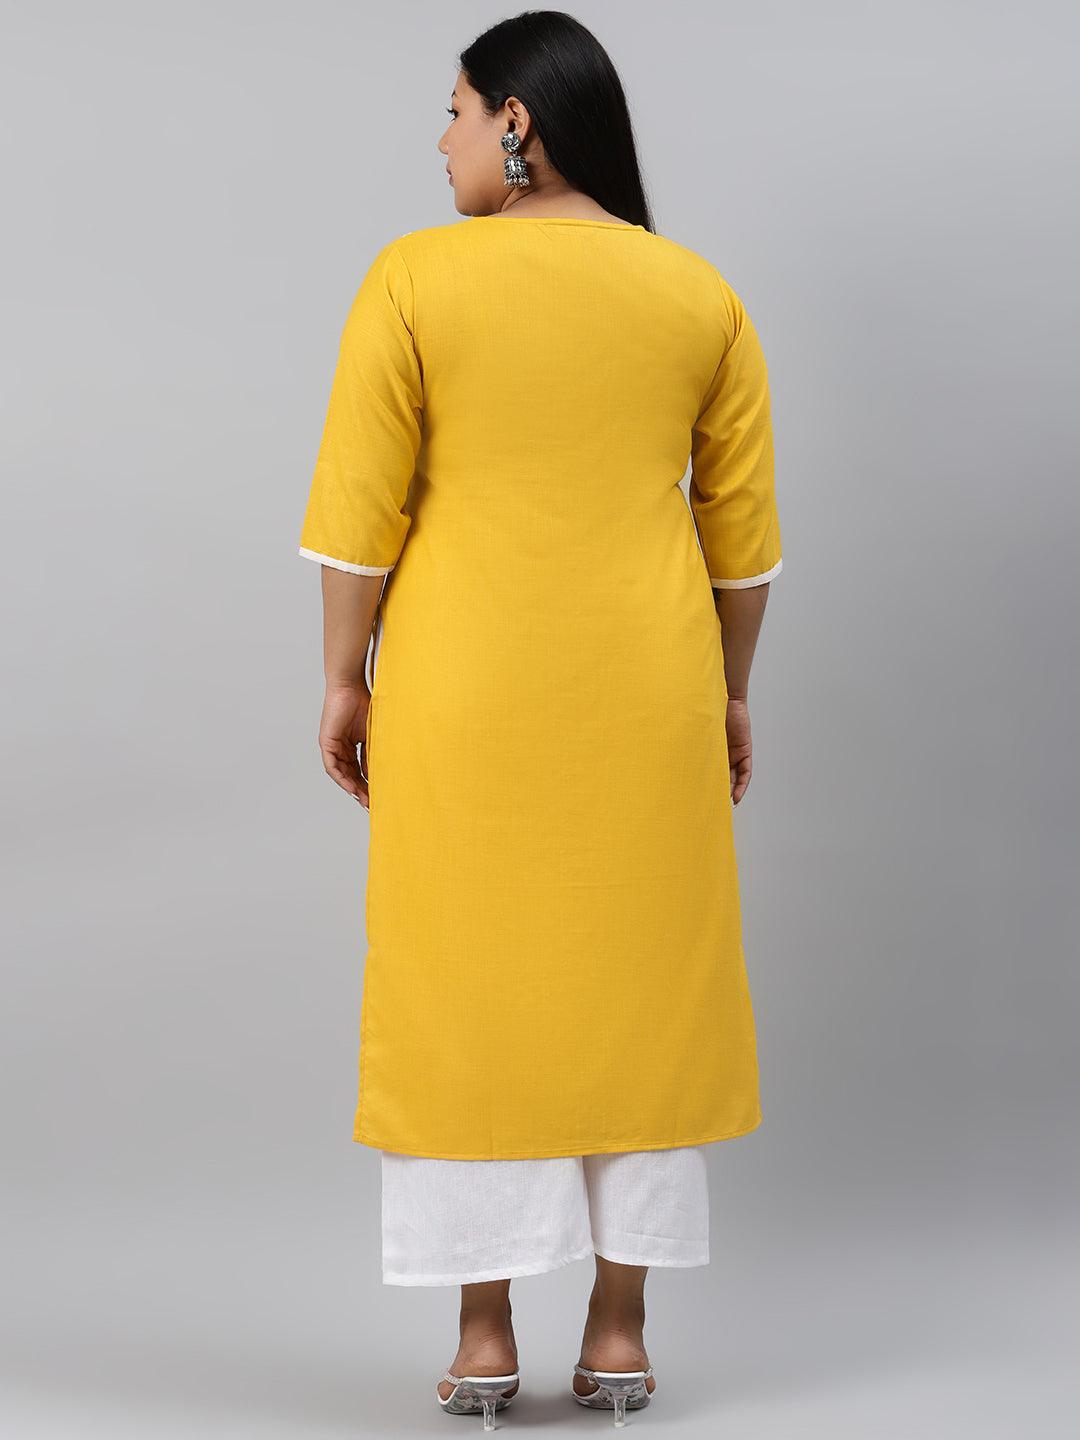 Plus Size Yellow Printed Cotton Kurta